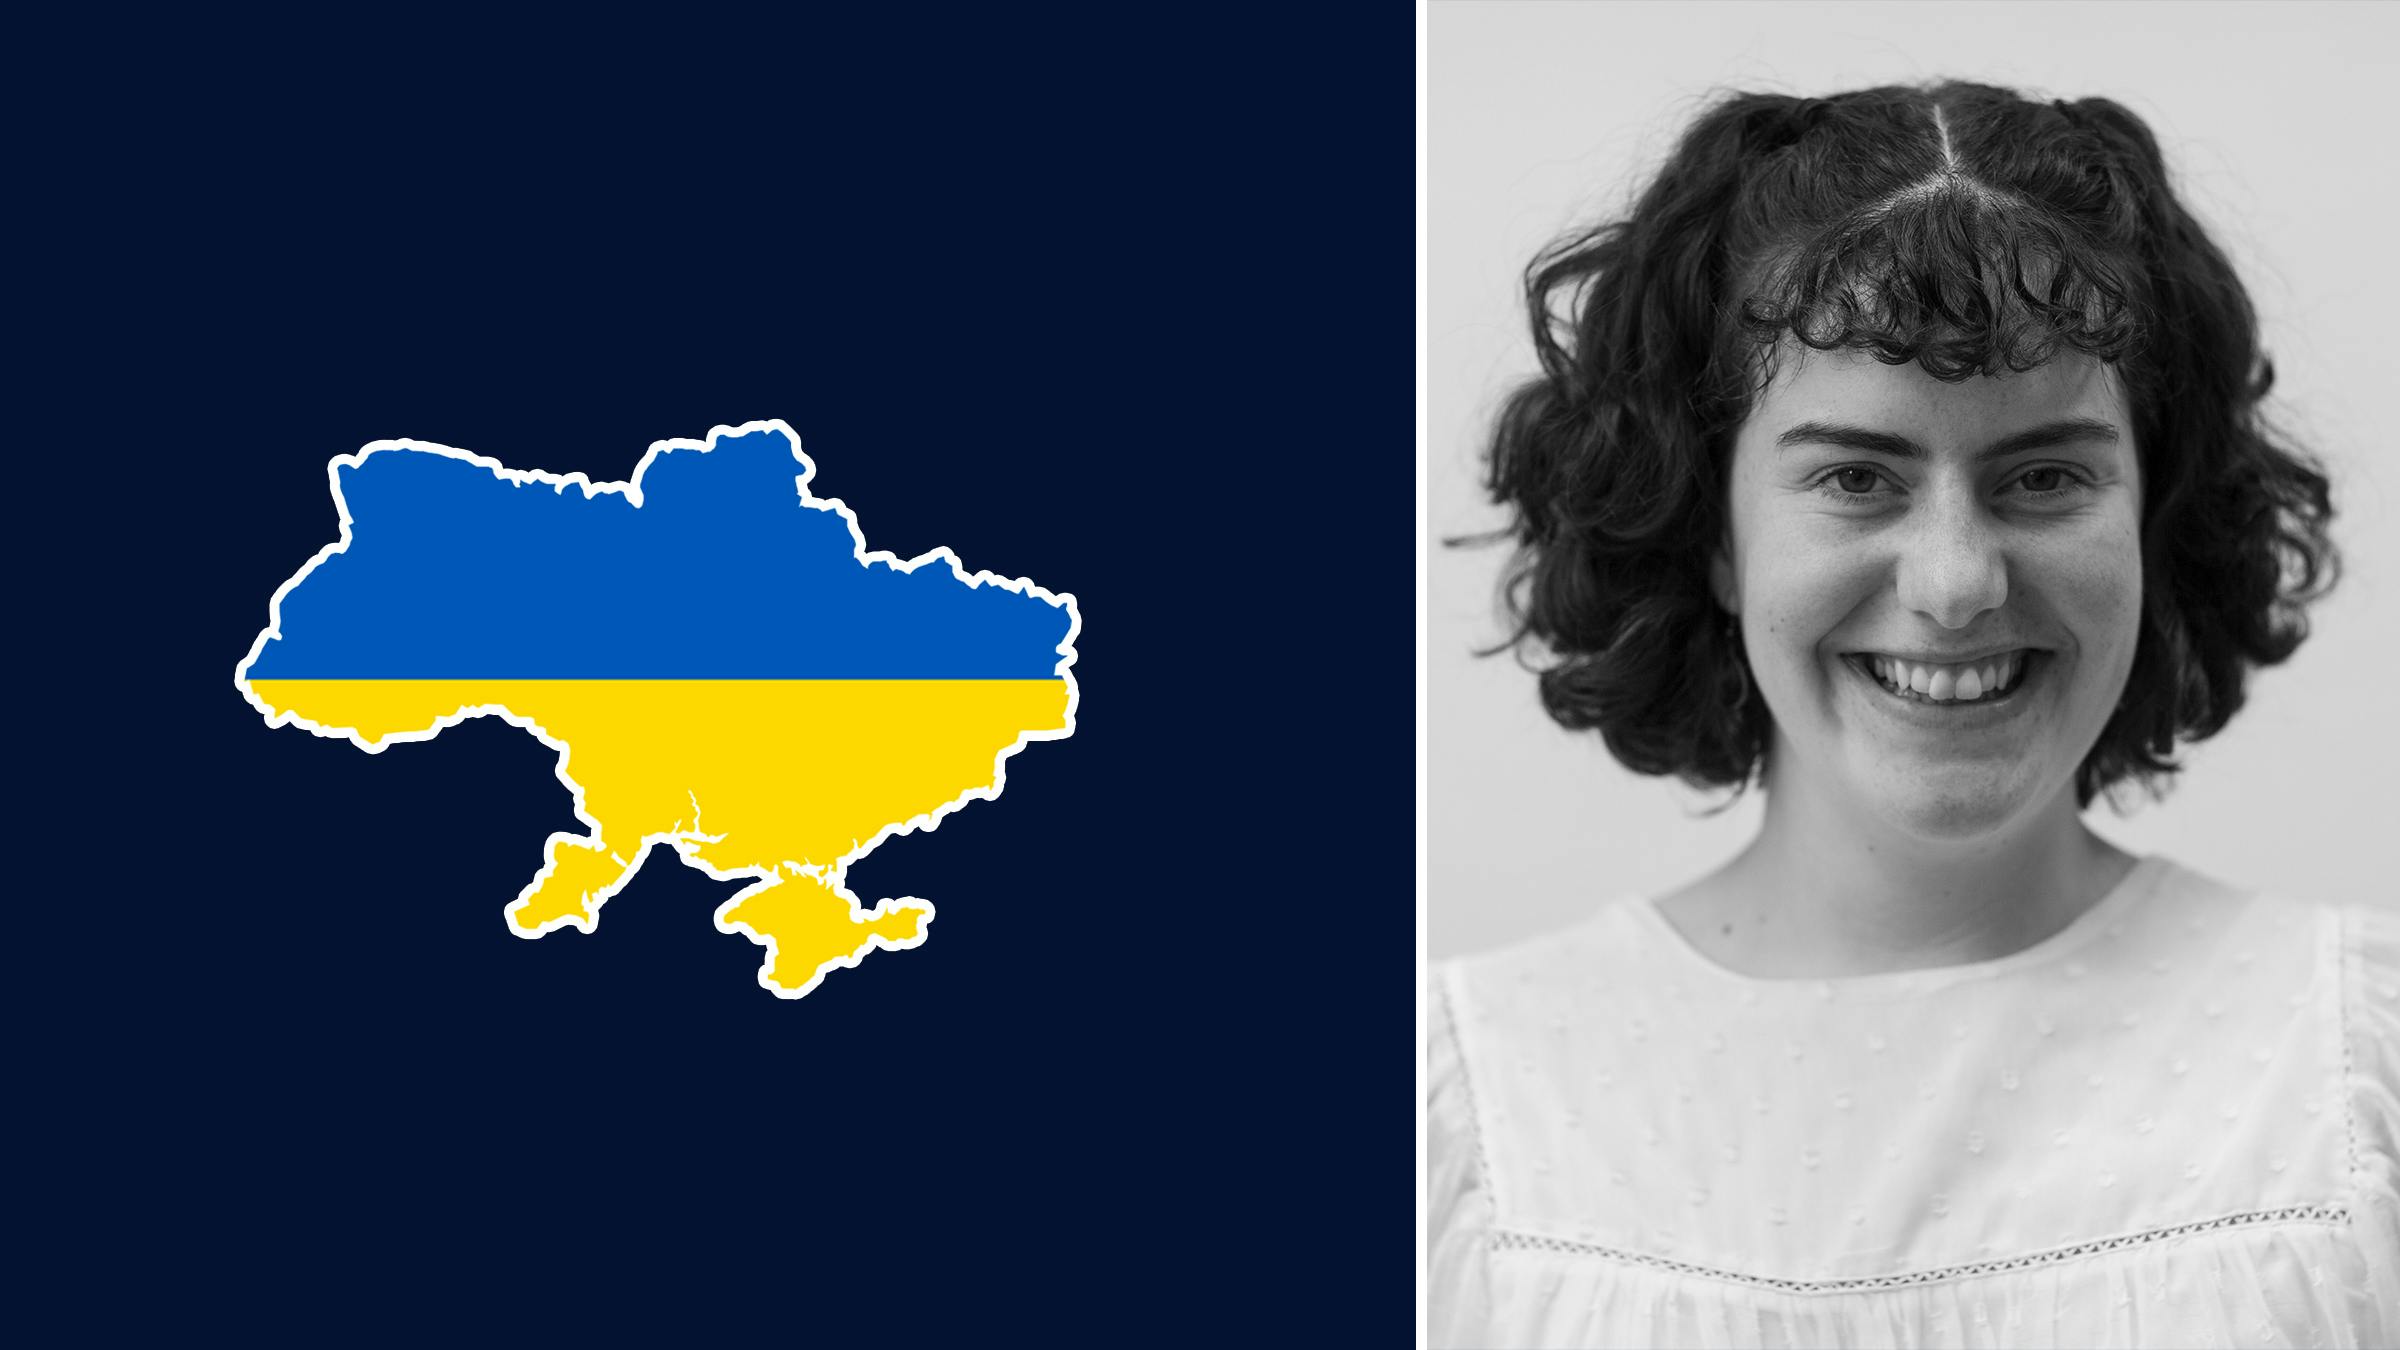 Rechts: Die Autorin Isolde in schwarz-weiß. Links: Eine Karte der Ukraine in den Nationalfarben blau und gelb.